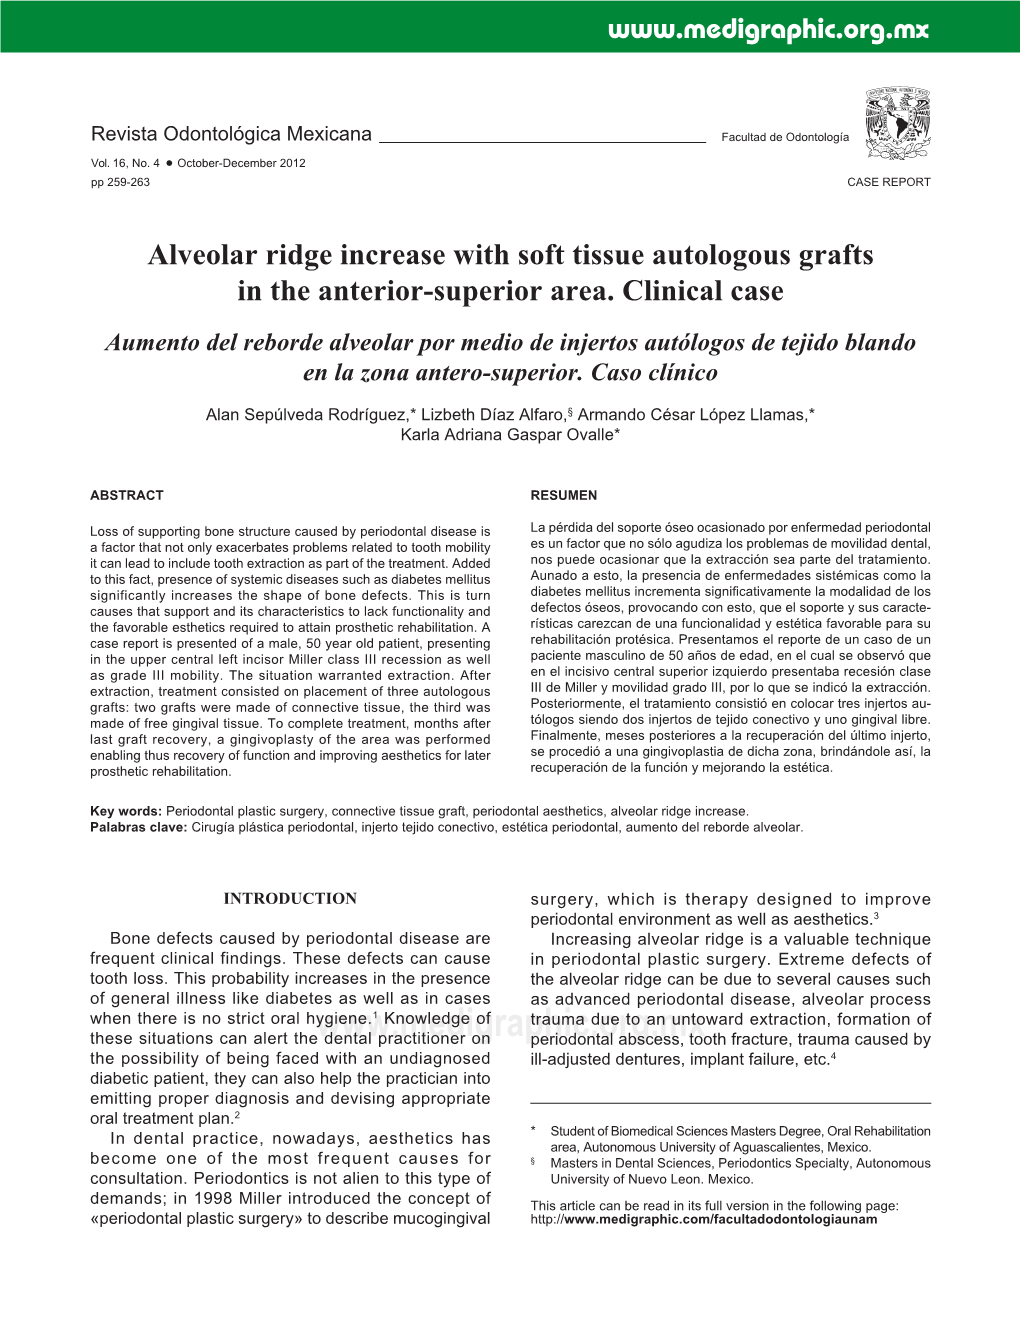 Alveolar Ridge Increase with Soft Tissue Autologous Grafts in the Anterior-Superior Area